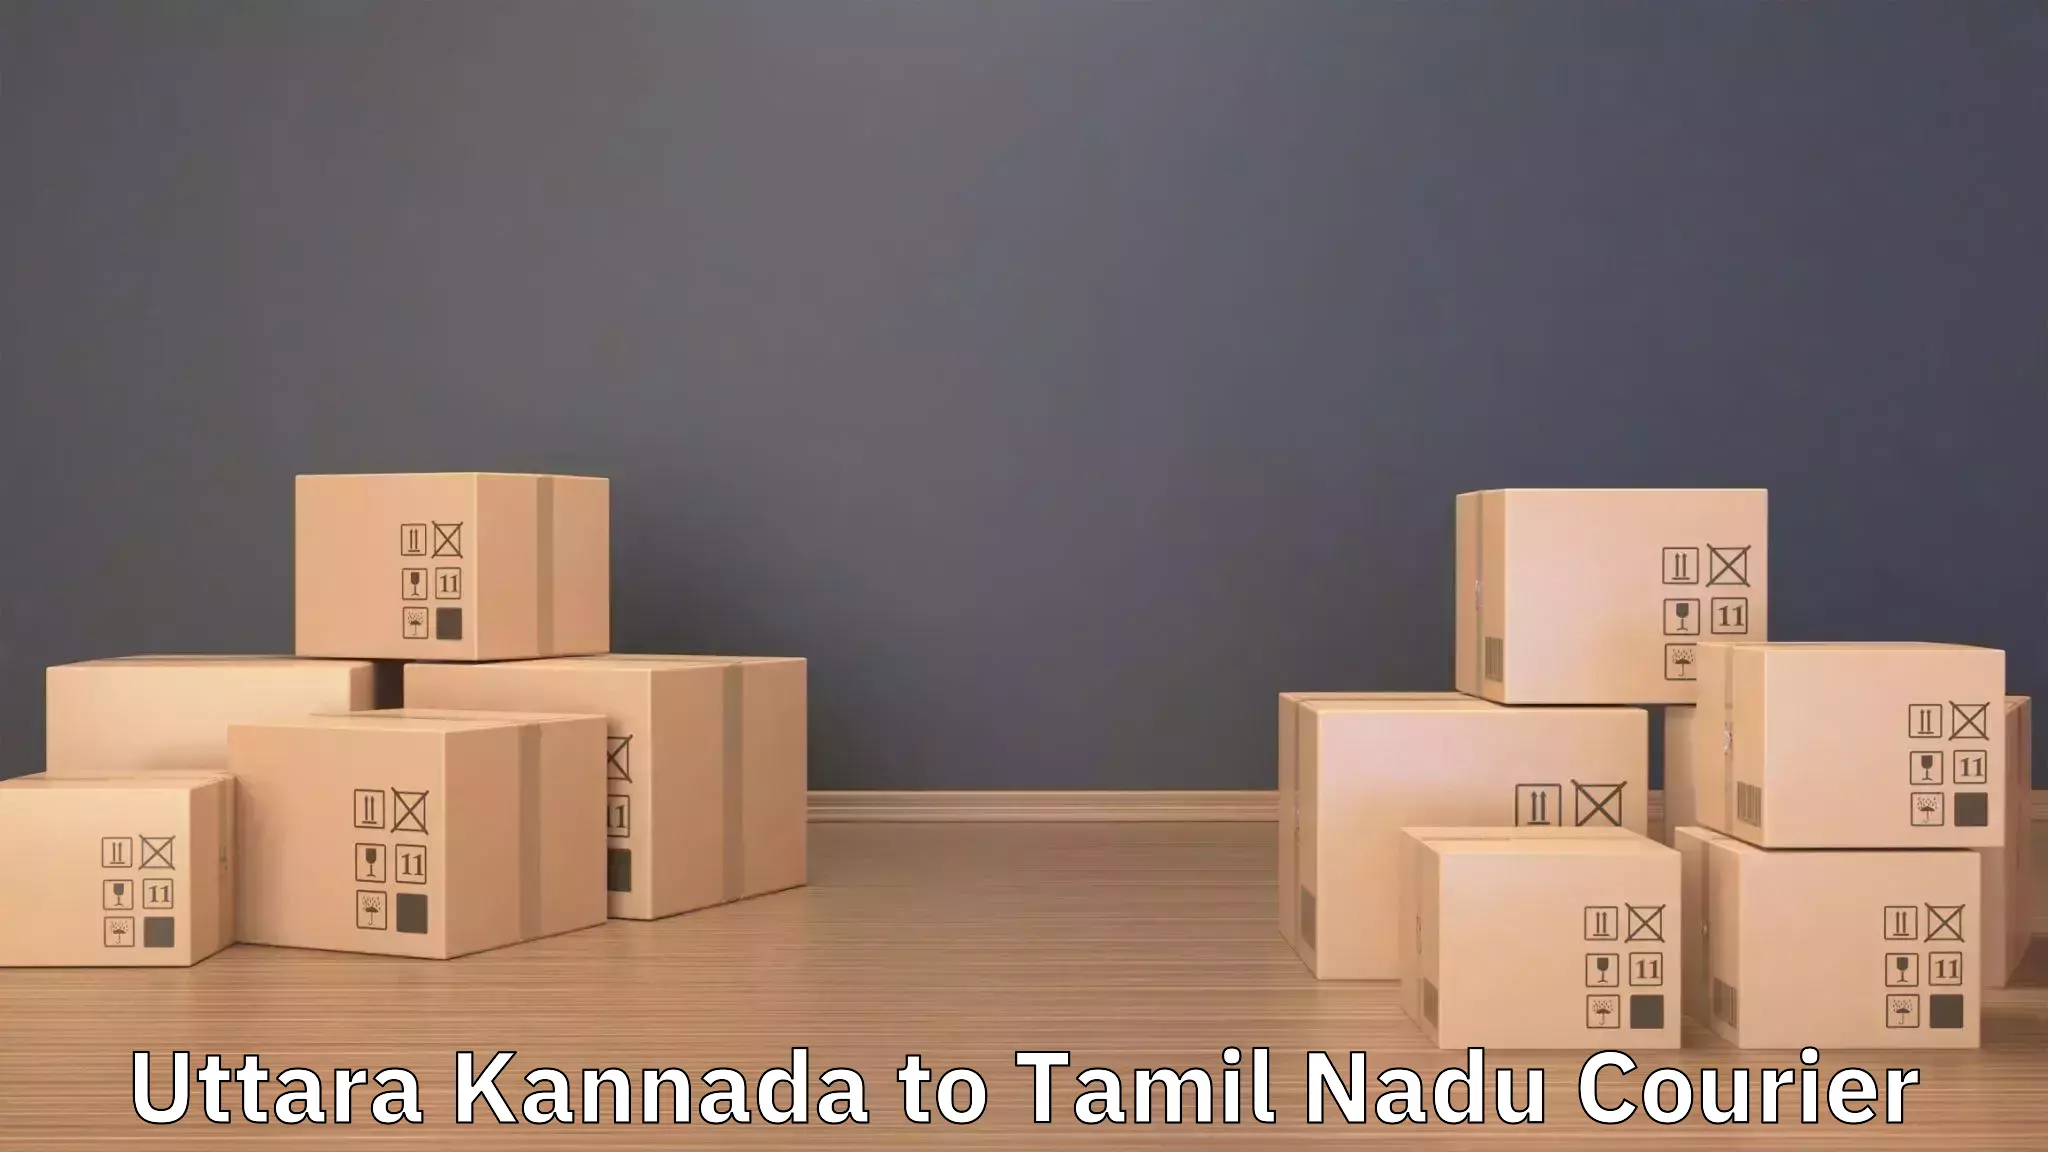 Moving service excellence Uttara Kannada to Gudiyattam